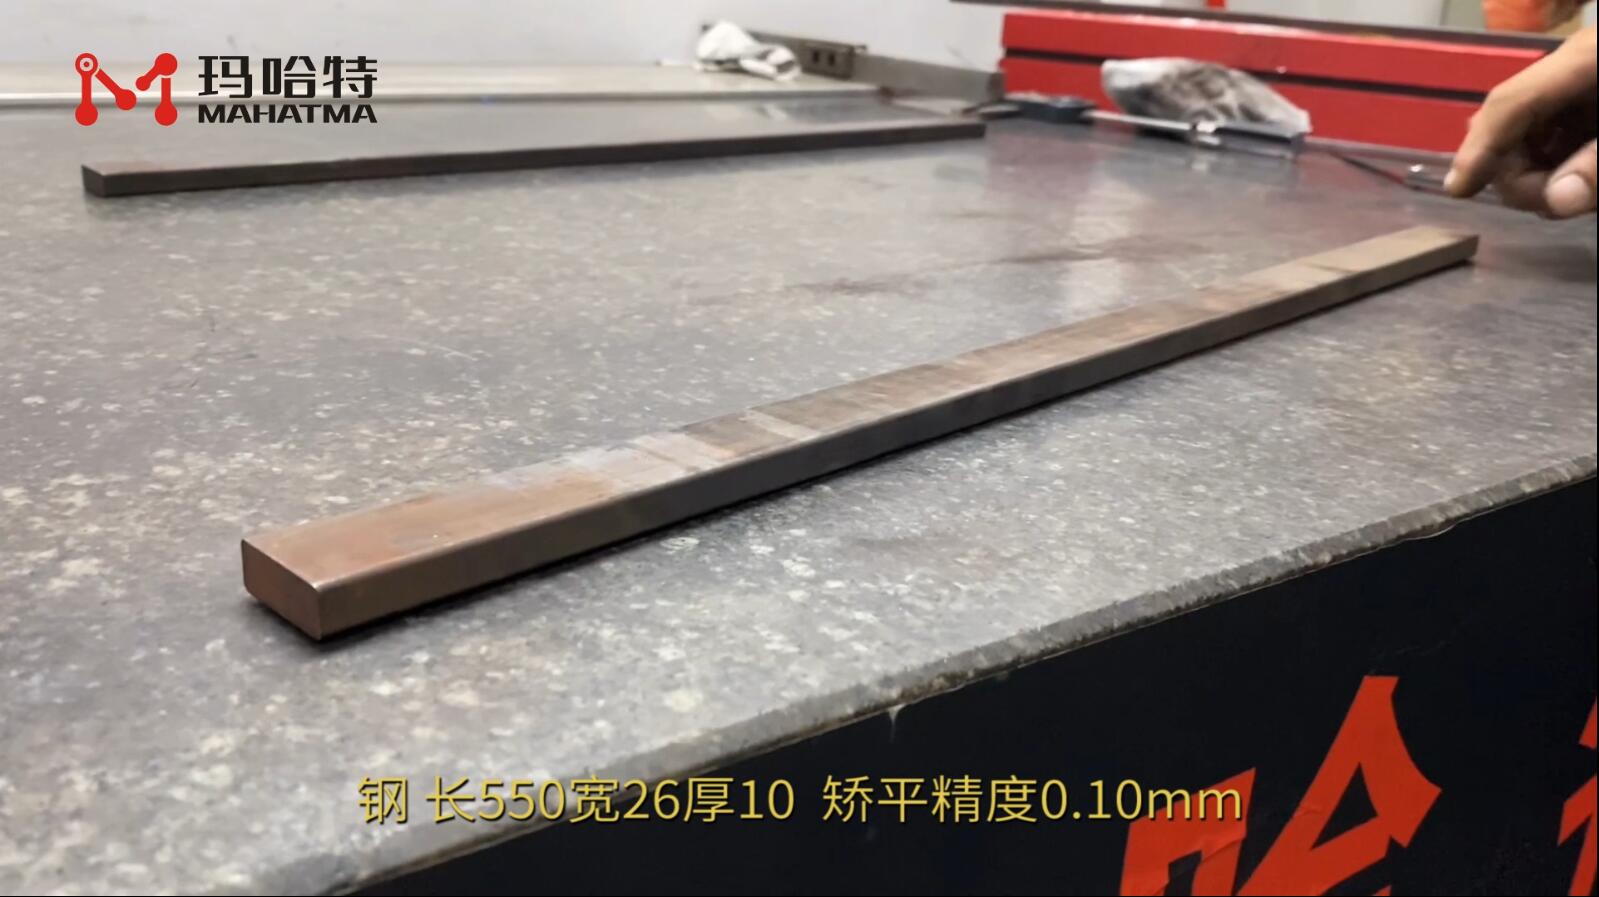 钢 MHT60-600 长方形 长550宽260厚10 矫平精度0.10mm